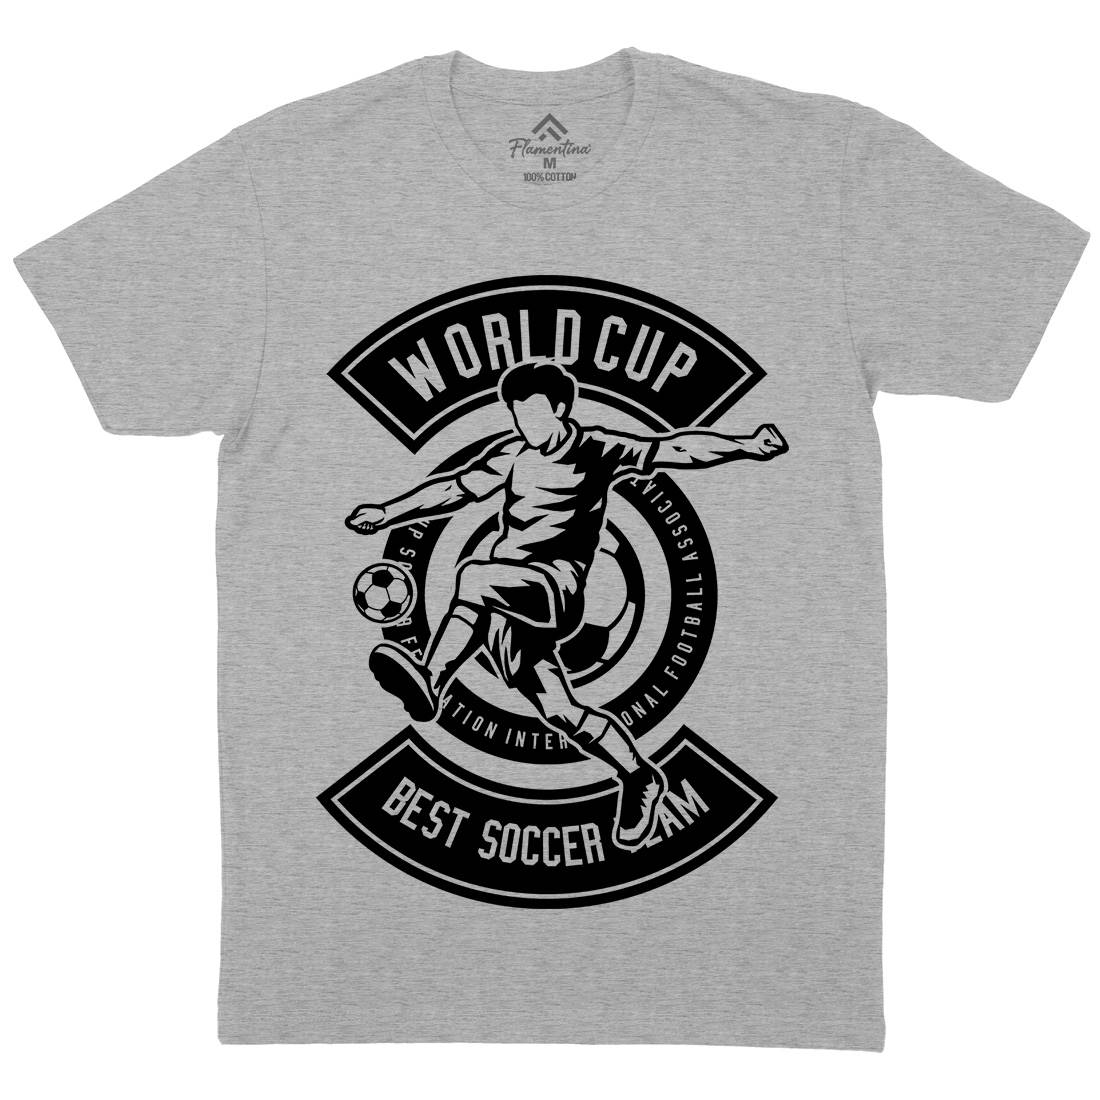 World Cup Soccer Mens Crew Neck T-Shirt Sport B675